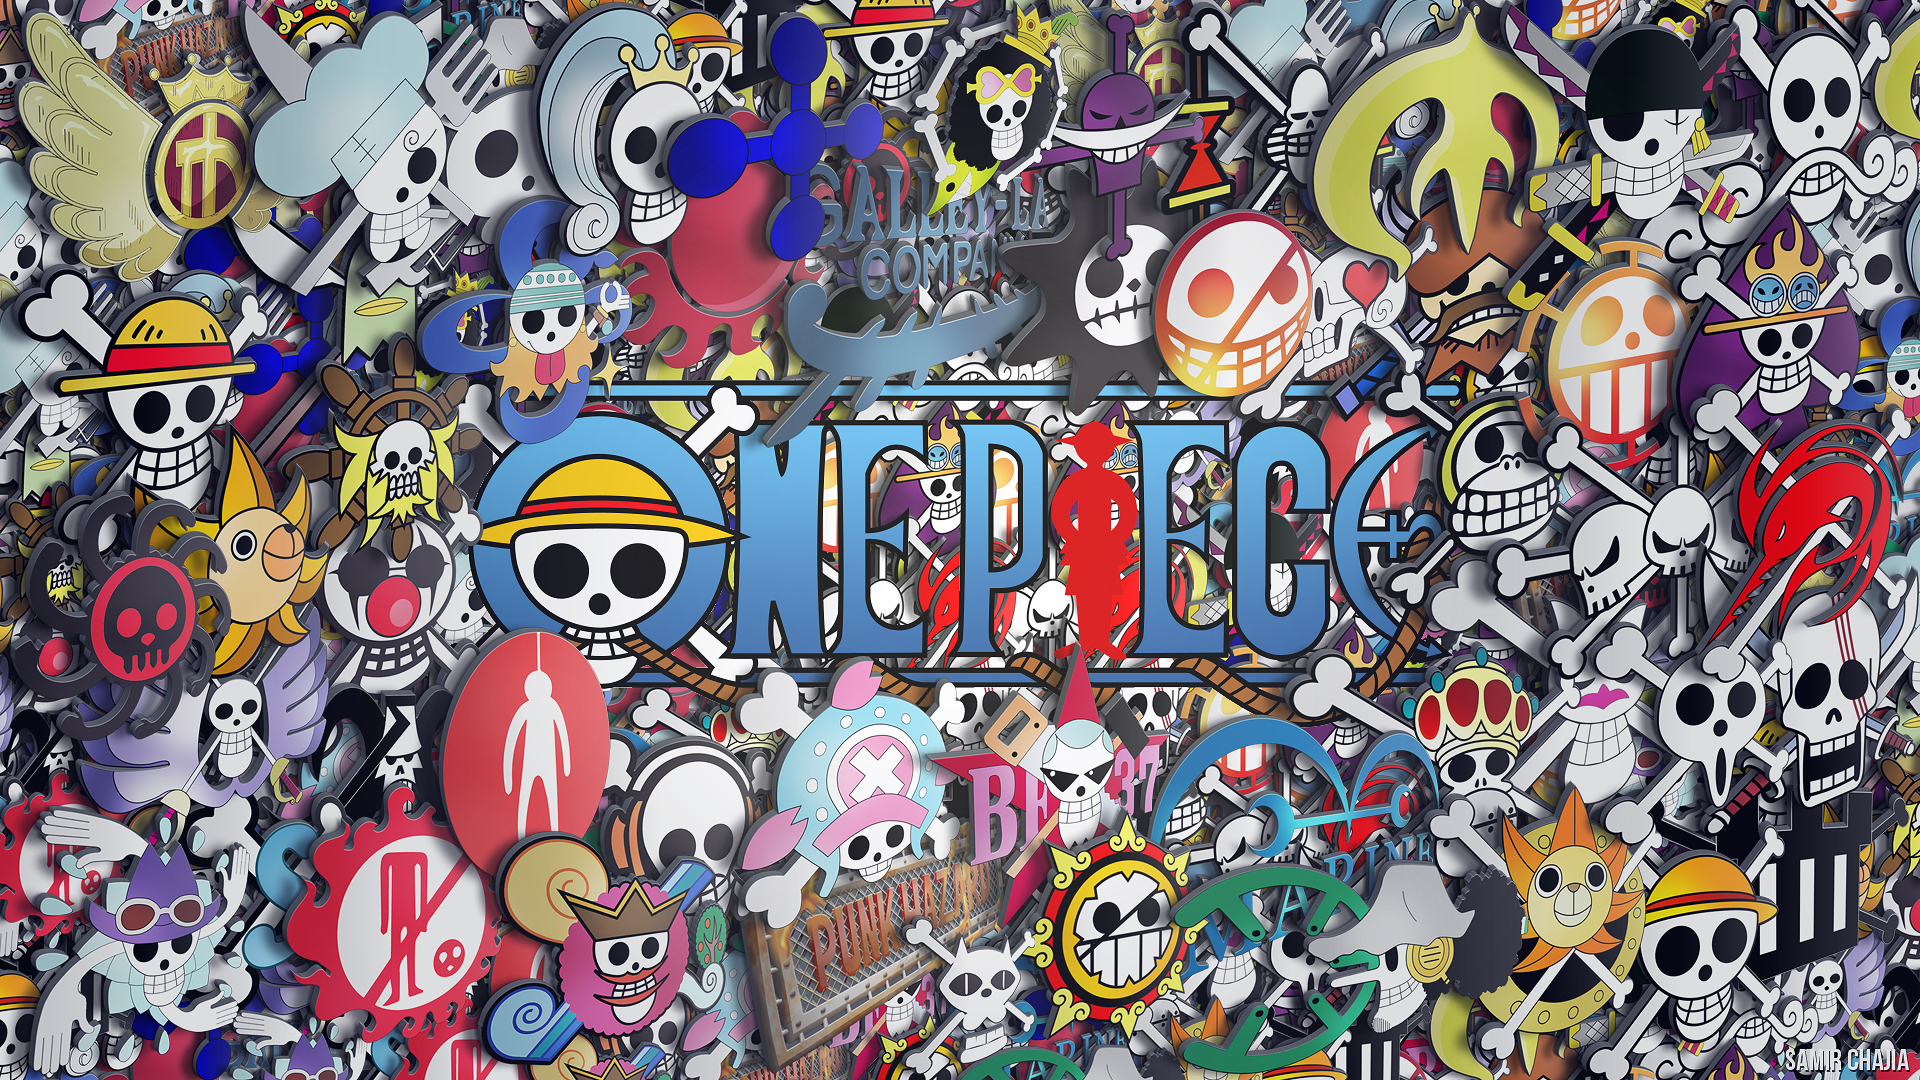 Wallpaper One Piece manga là một cách tuyệt vời để trang trí desktop của bạn. Với nhiều chủ đề khác nhau, các fan của bộ truyện One Piece có thể lựa chọn cho mình những bức ảnh đẹp nhất để sử dụng. Hãy cùng xem qua những mẫu hình nền One Piece manga để tìm kiếm sự yêu thích của riêng mình.